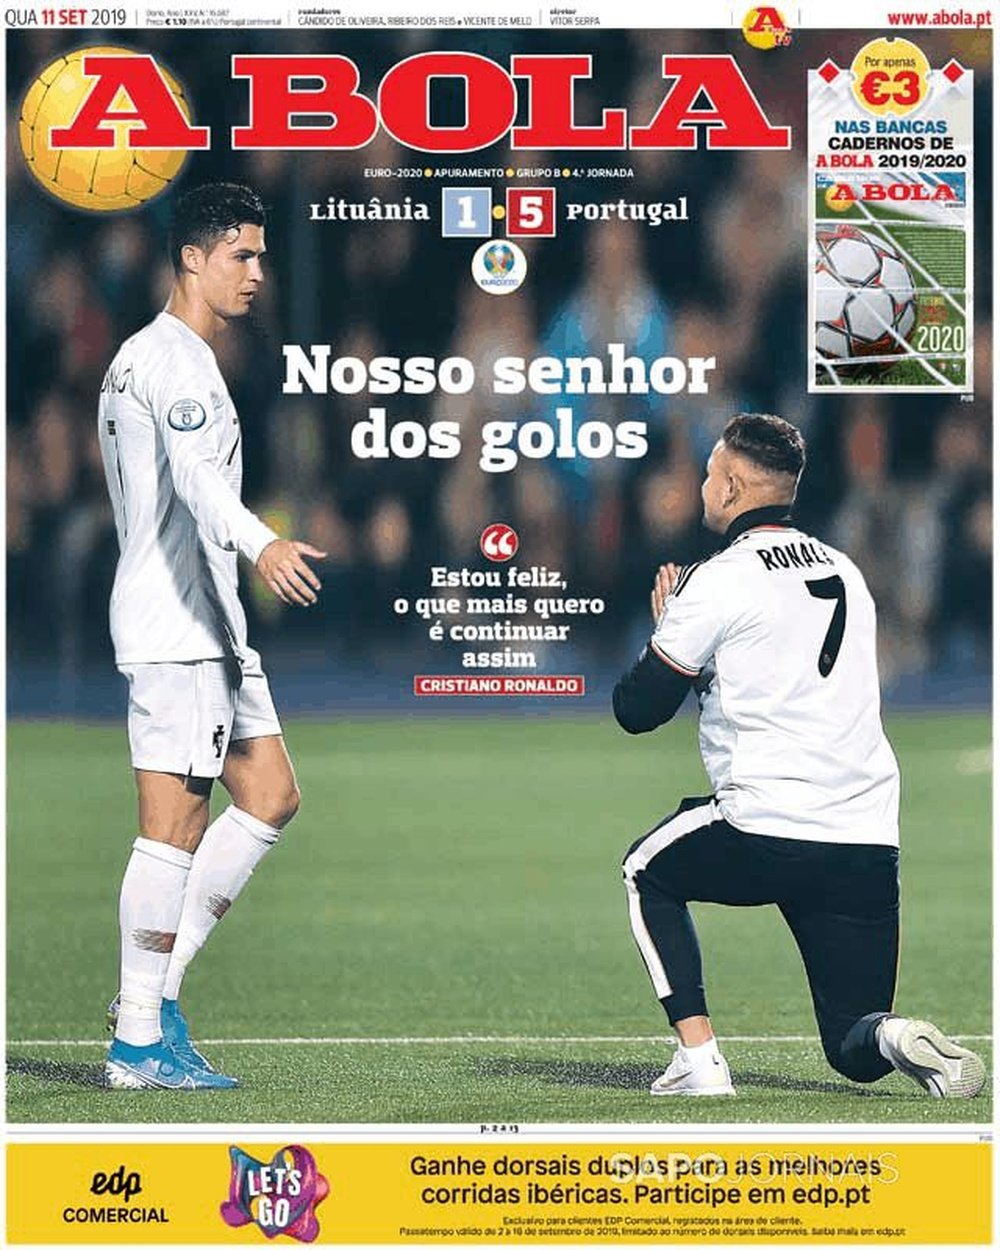 Capa do jornal 'A Bola' de 11/09/19. A Bola